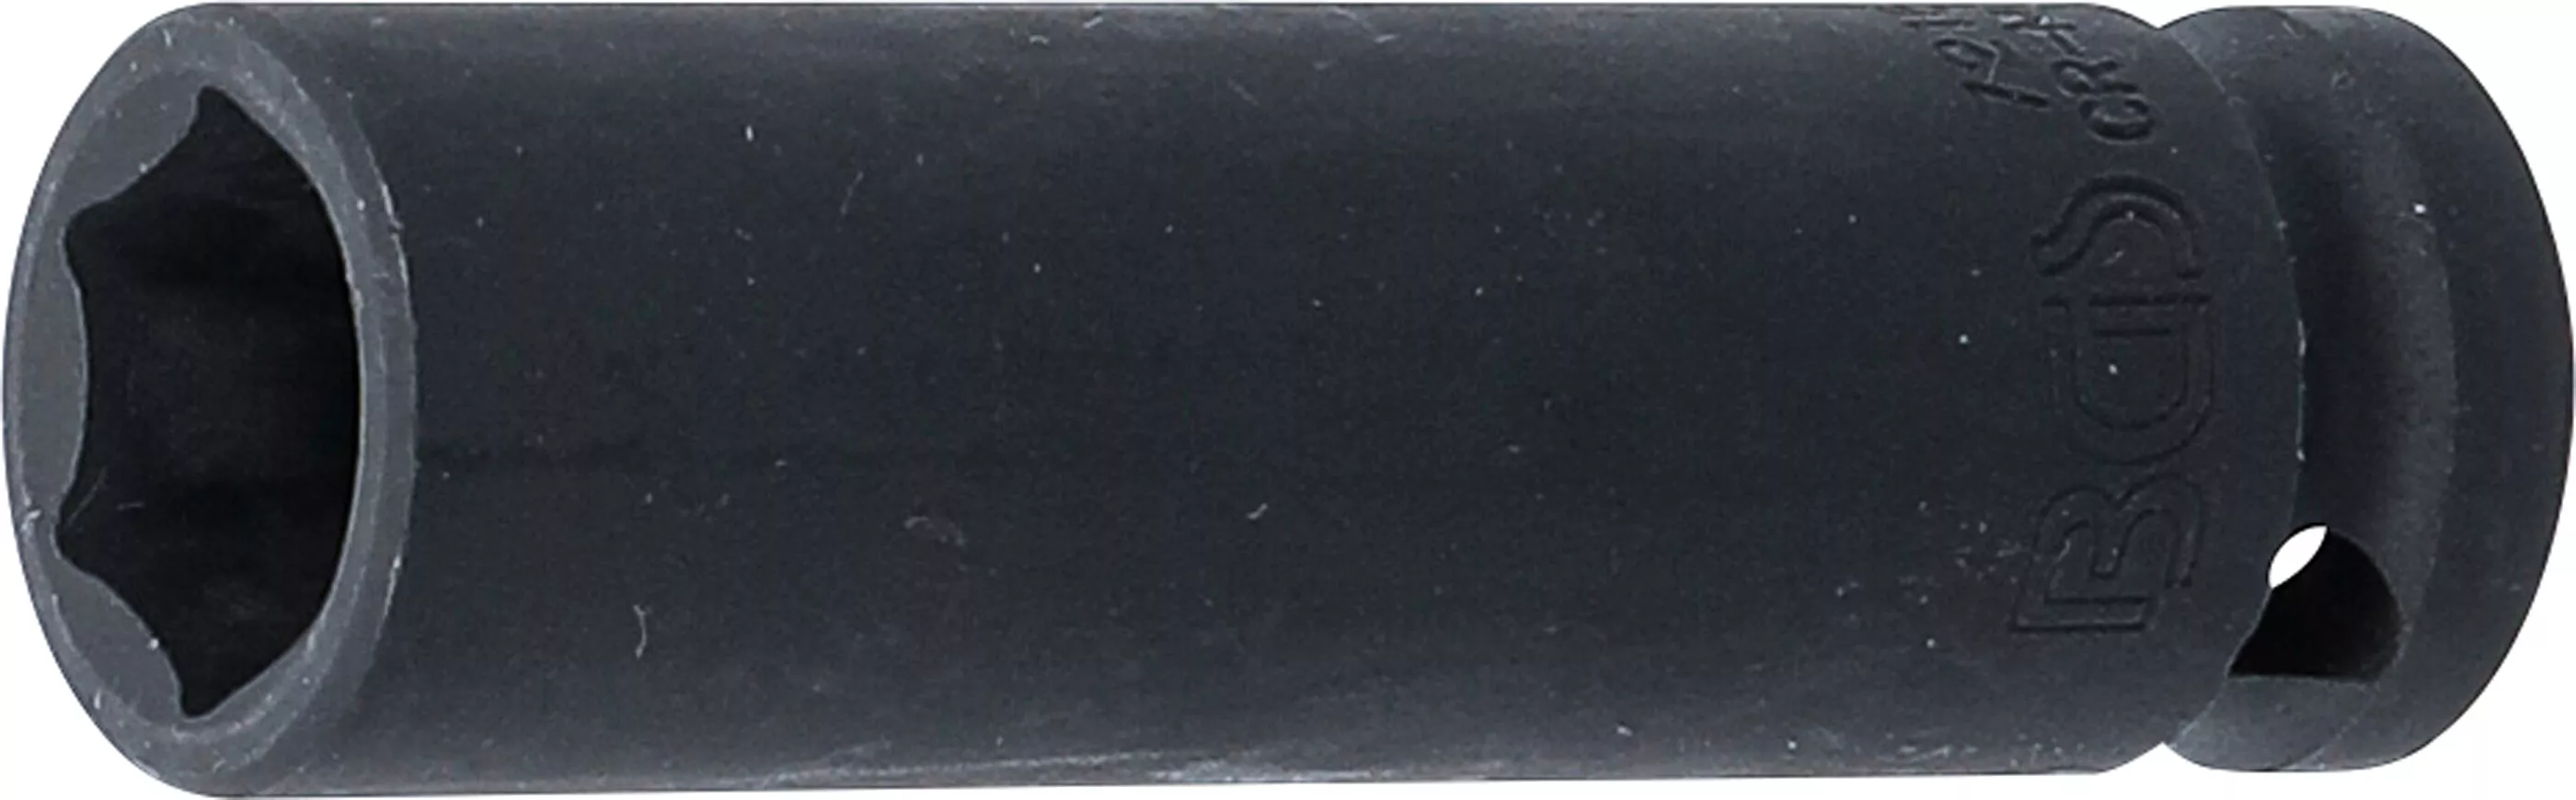 Rázový nástrčný klíč, šestihranný, 1/2", 16 mm - B7216